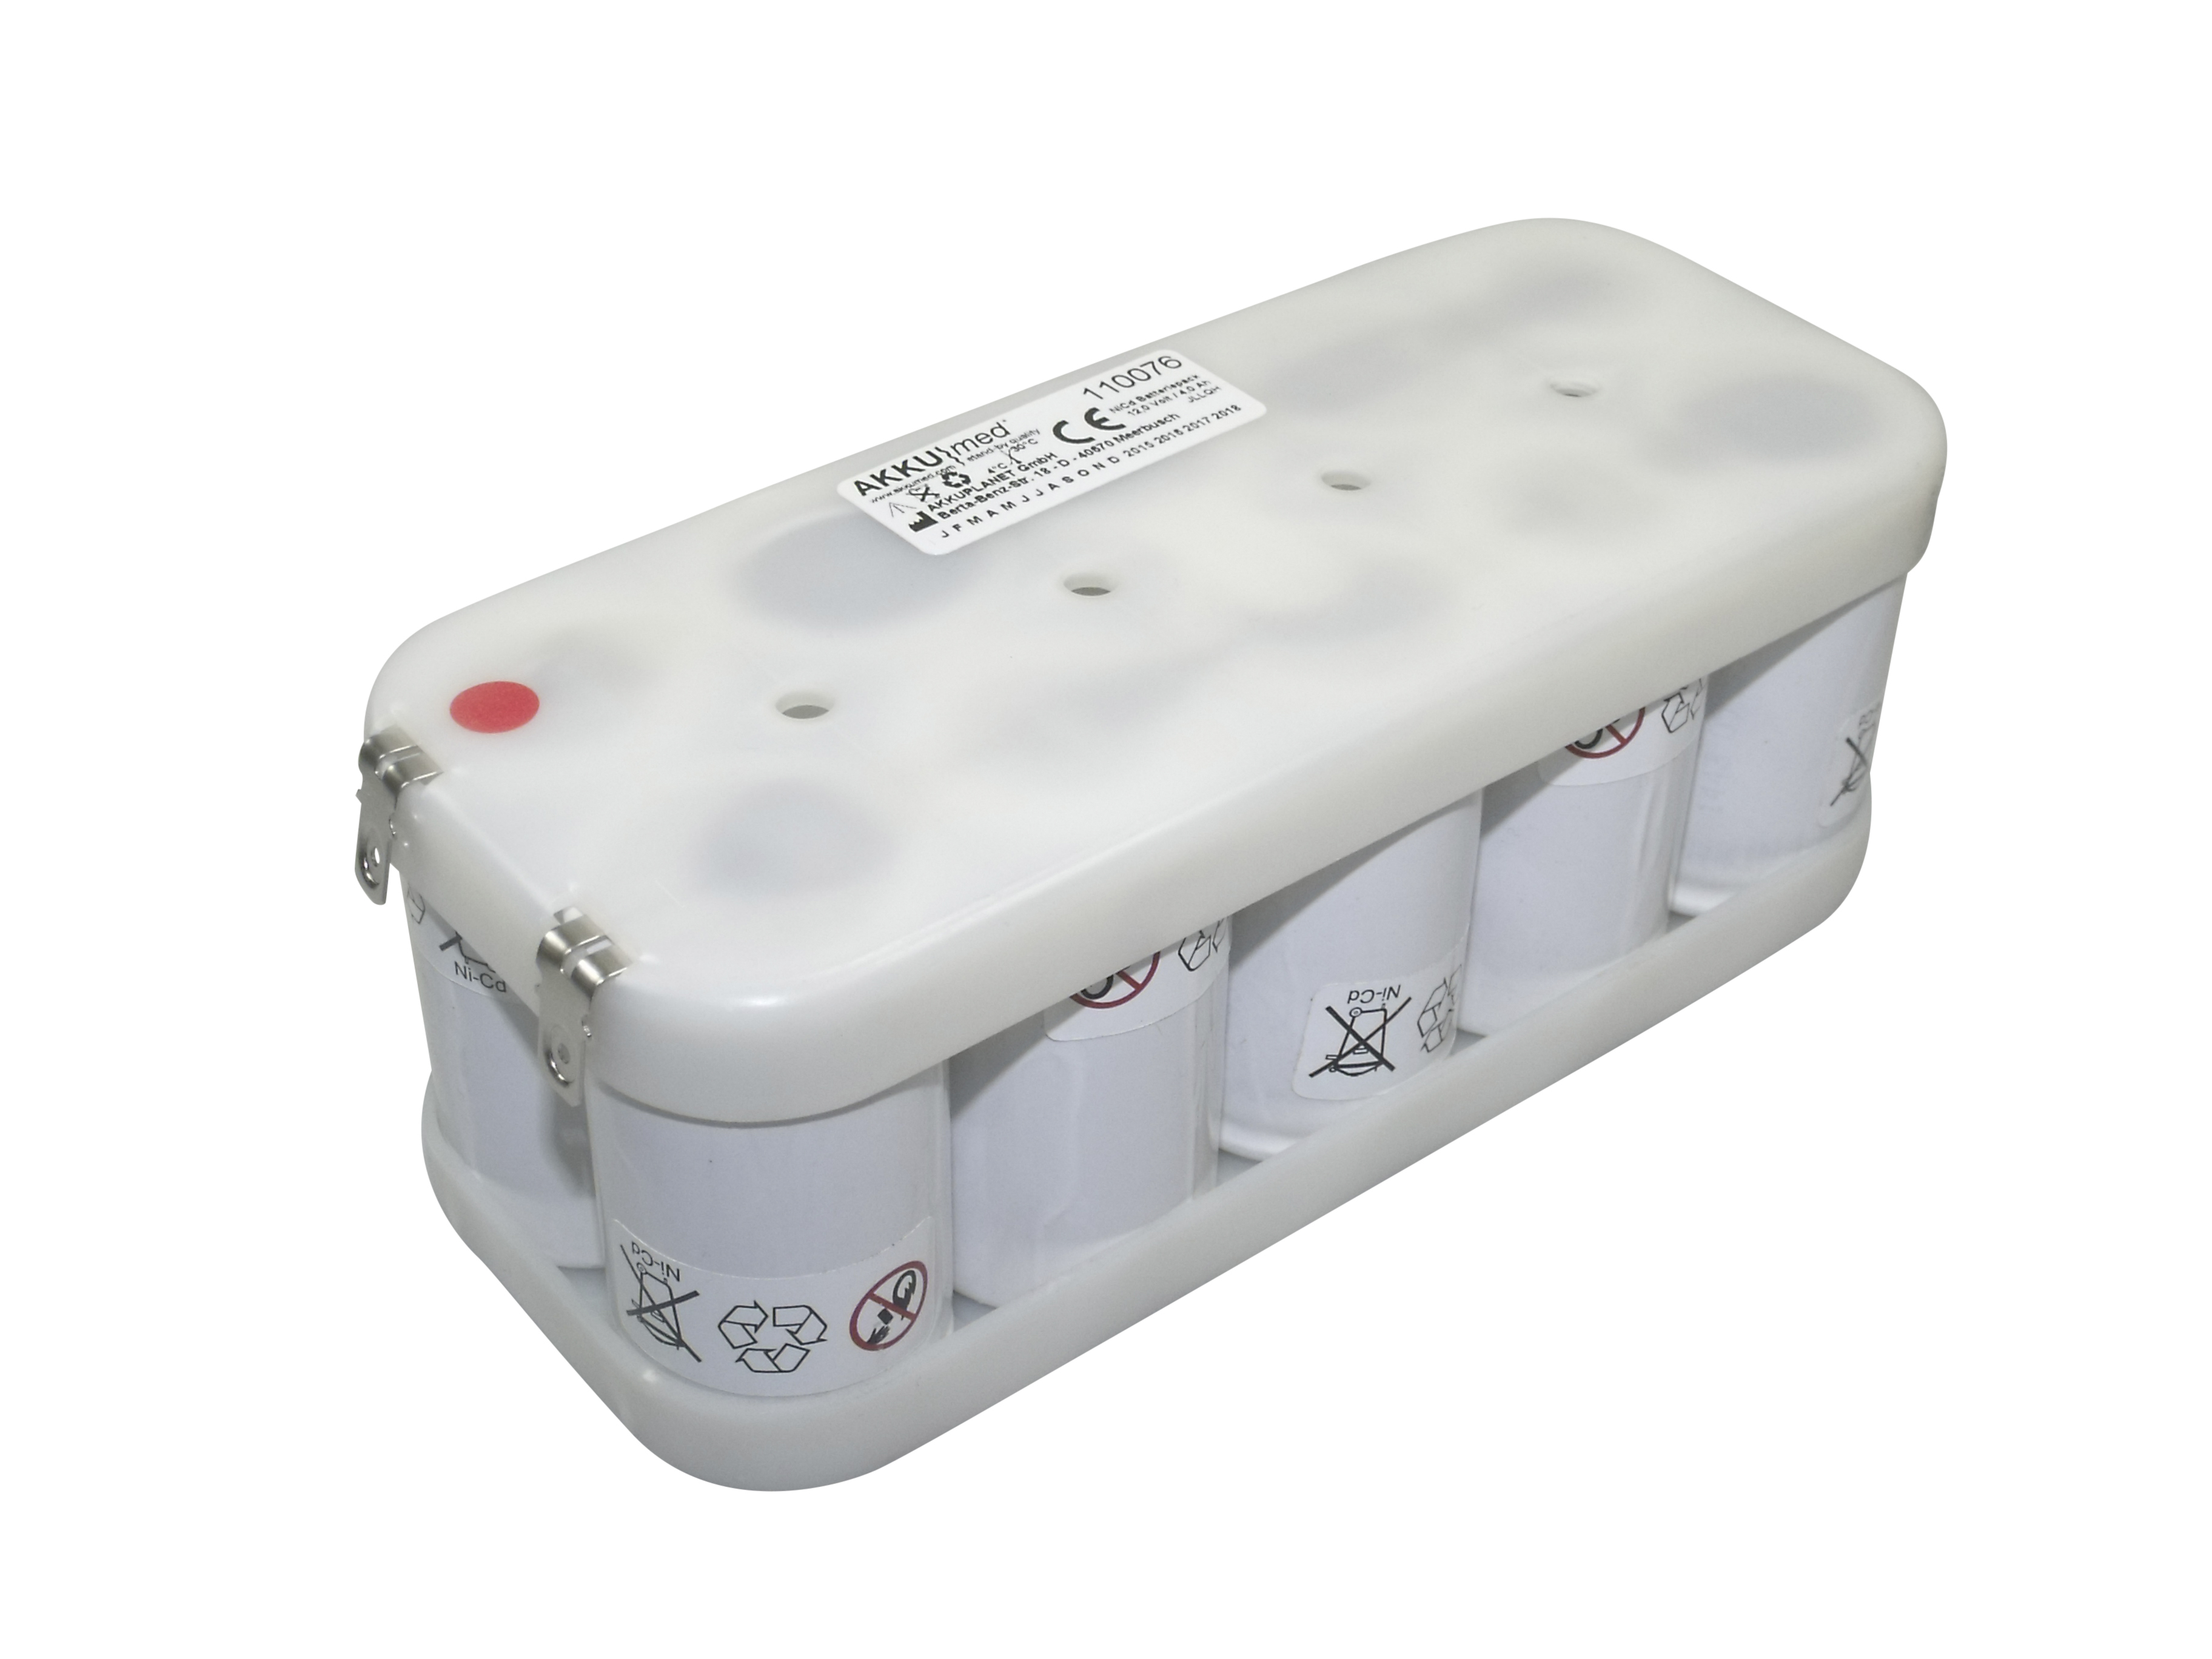 NC Akku passend für Siemens Defibrillator Sirecard P/ Theracard PM CE Konform